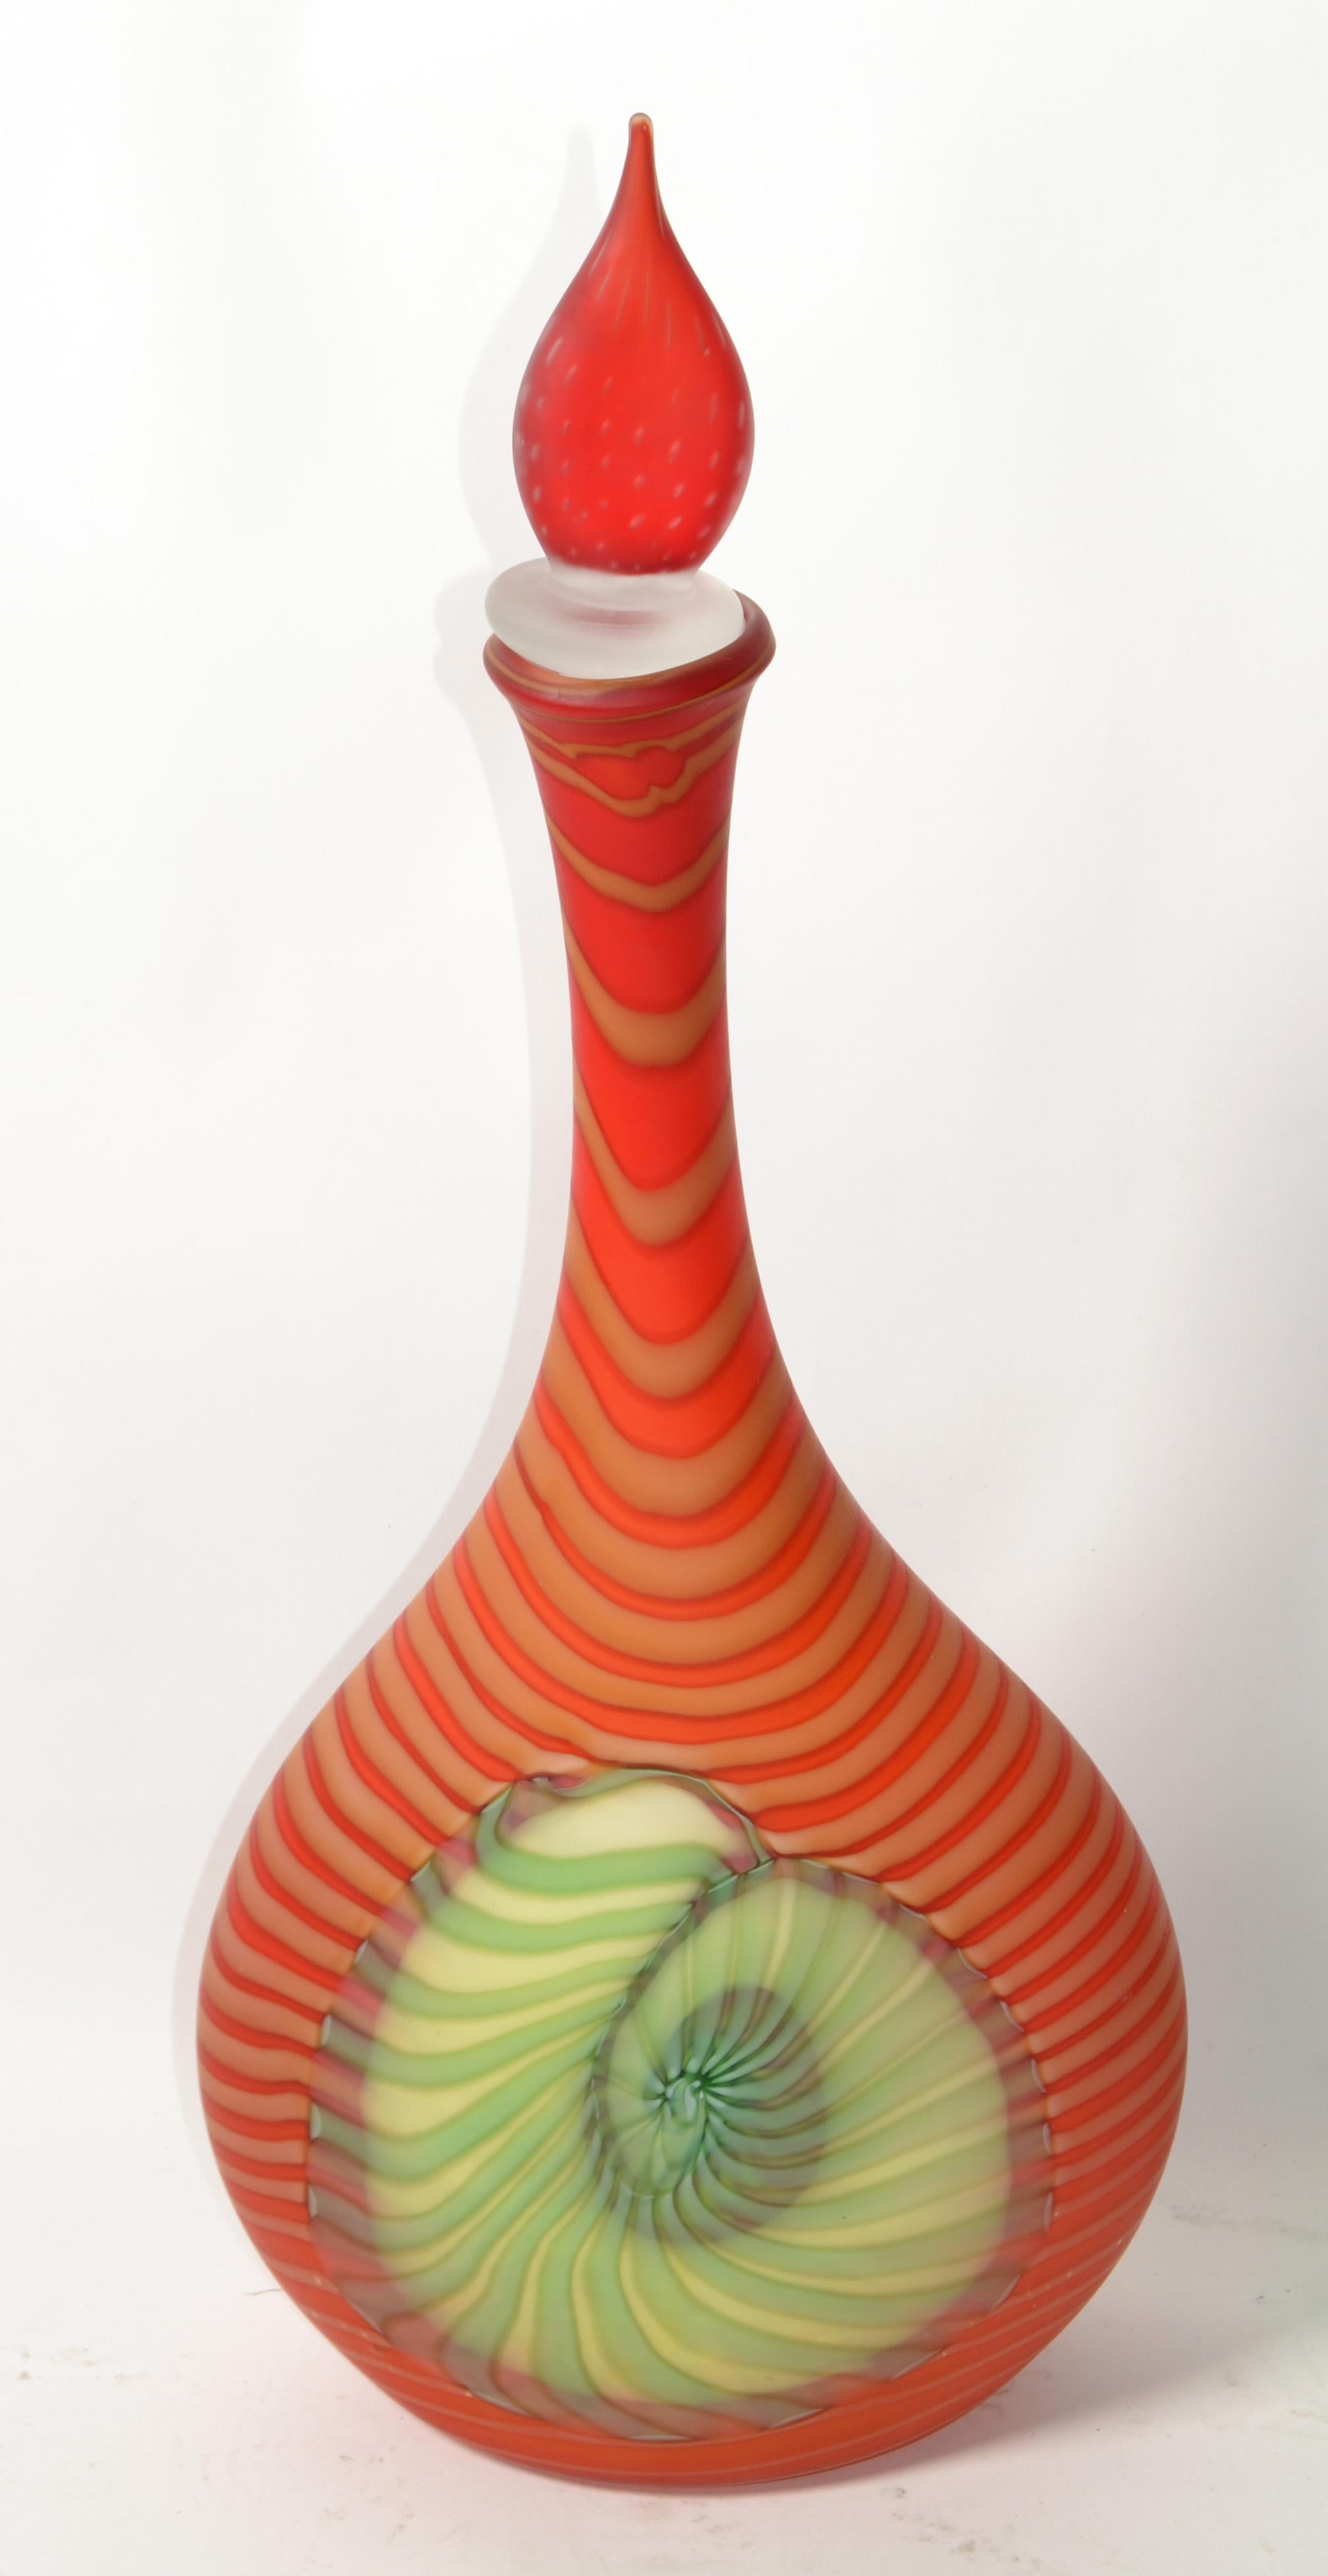 Pinzan Murano Art Glass Genie Decanter Orange White Yellow Swirls Nautical Shell For Sale 7